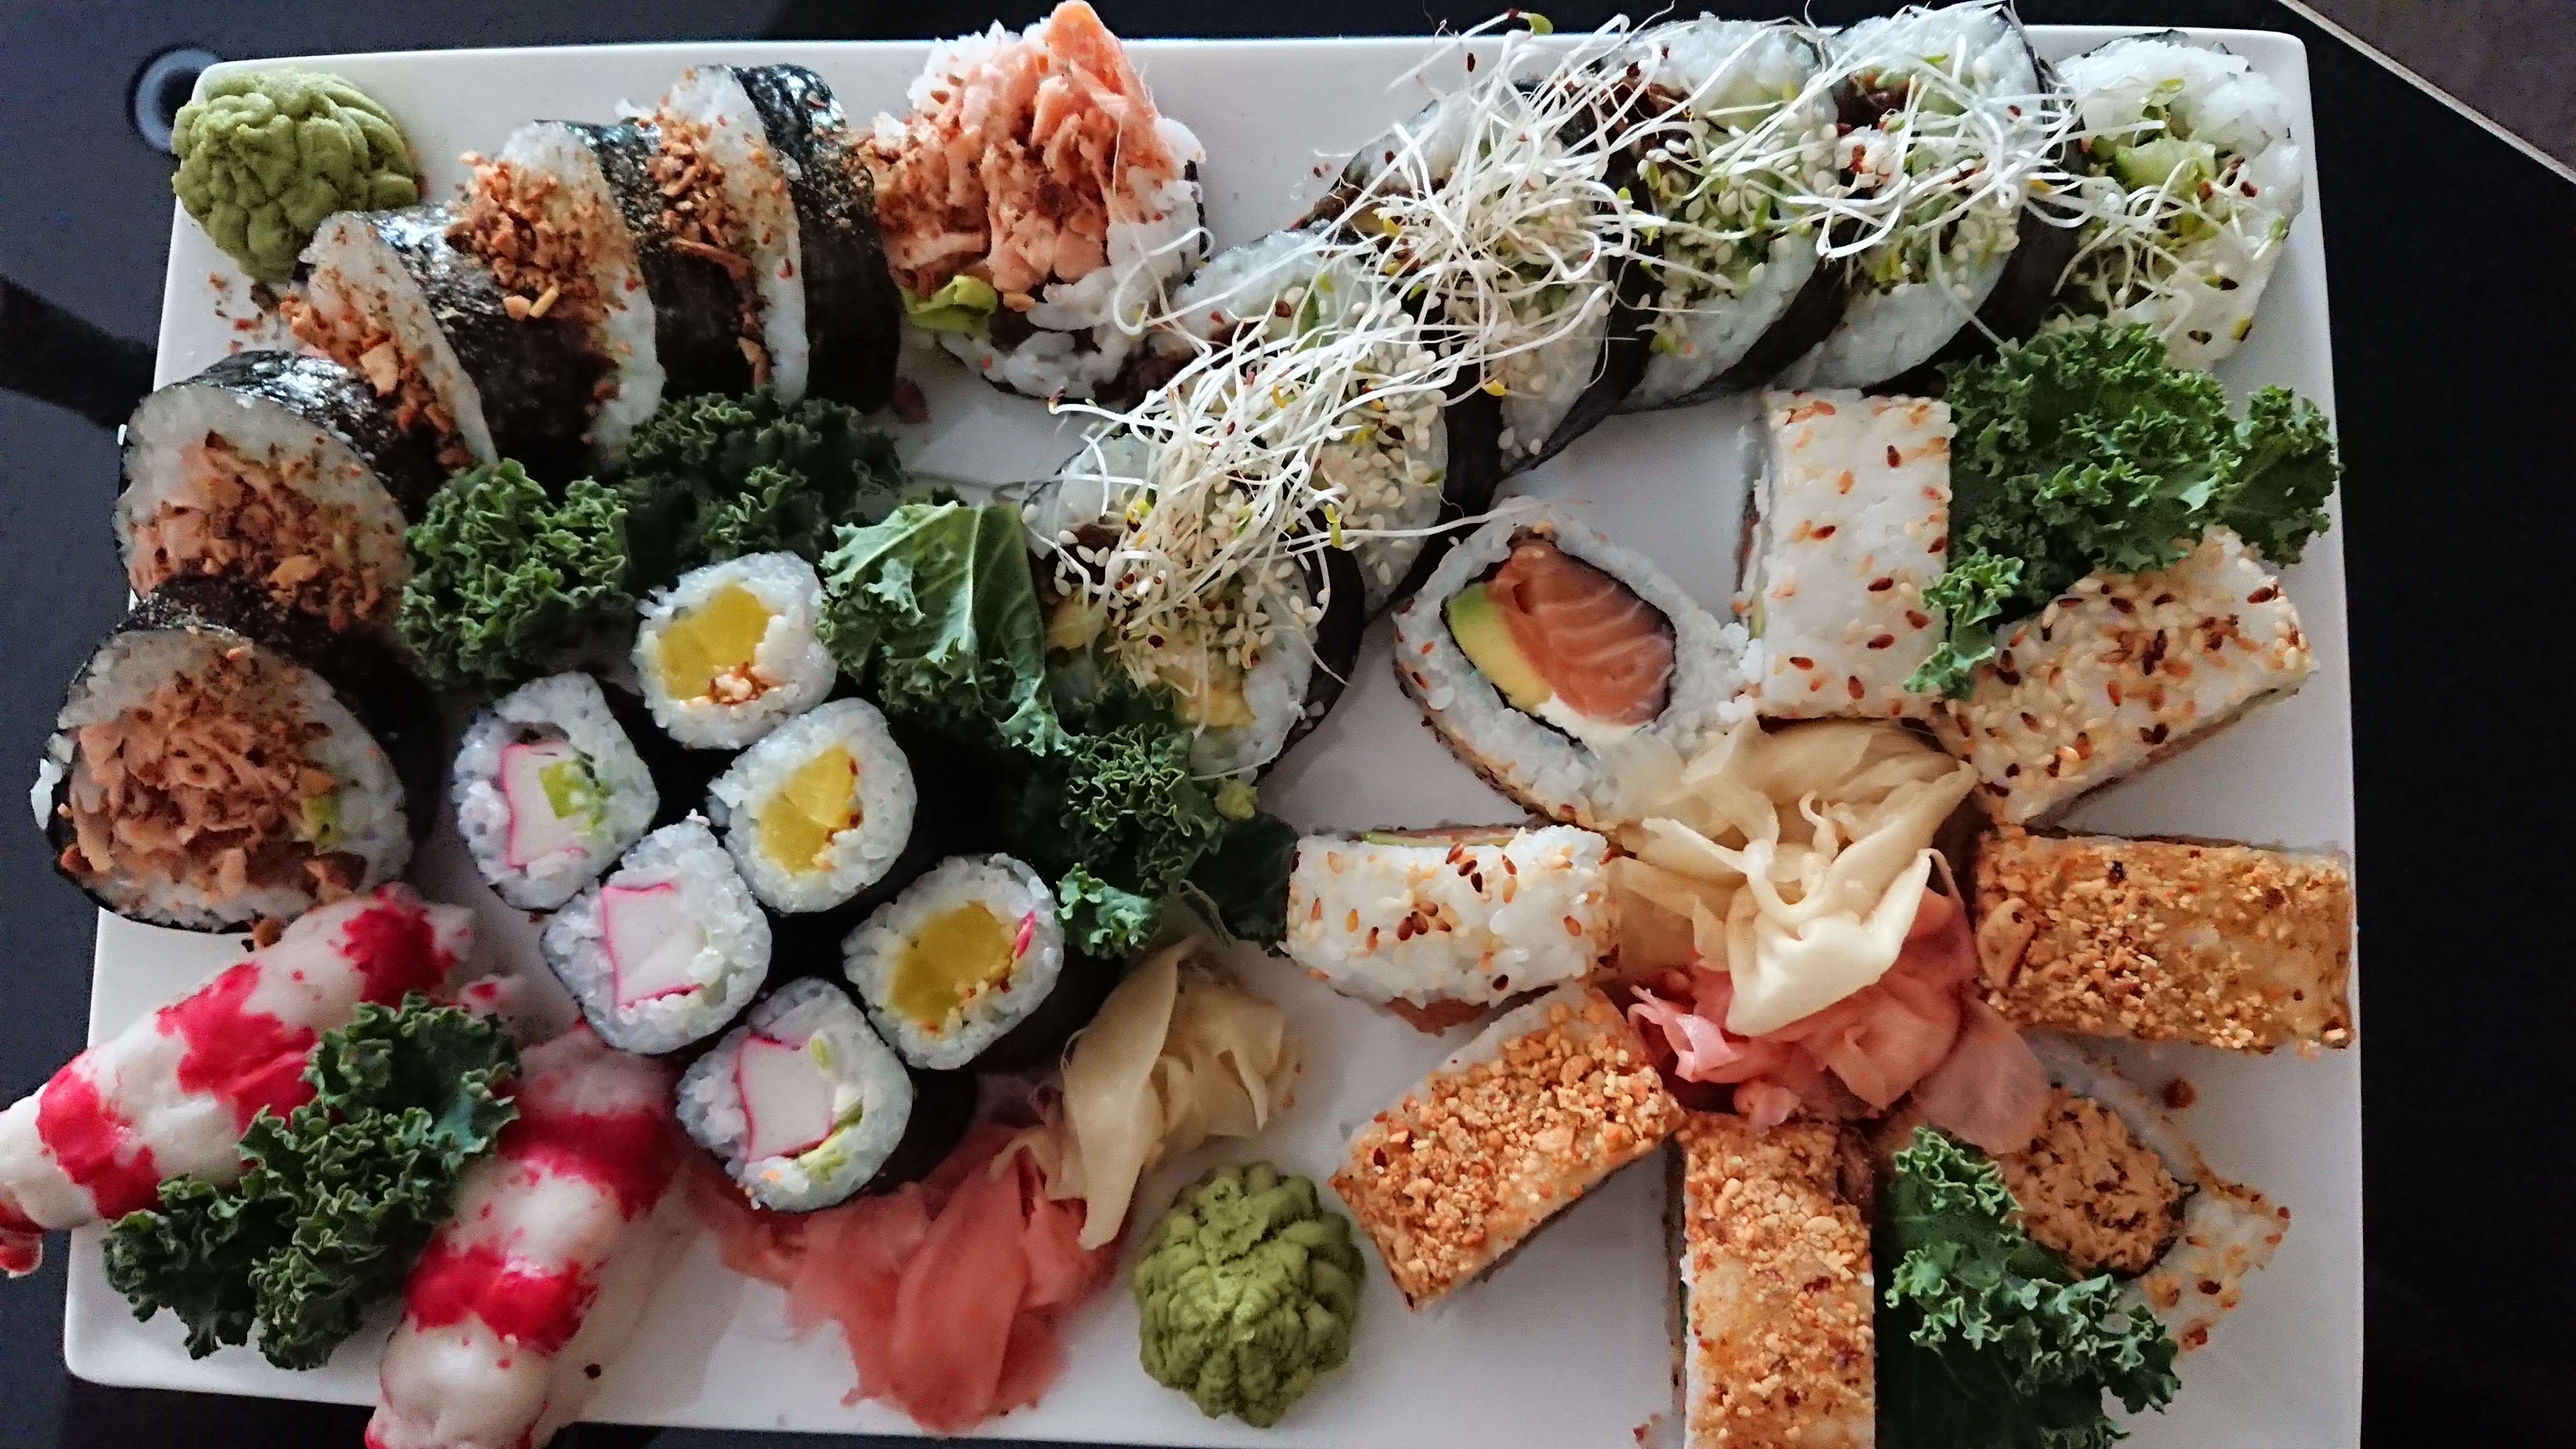 Restauracja Yoi Sushi Olsztyn - Walentynki